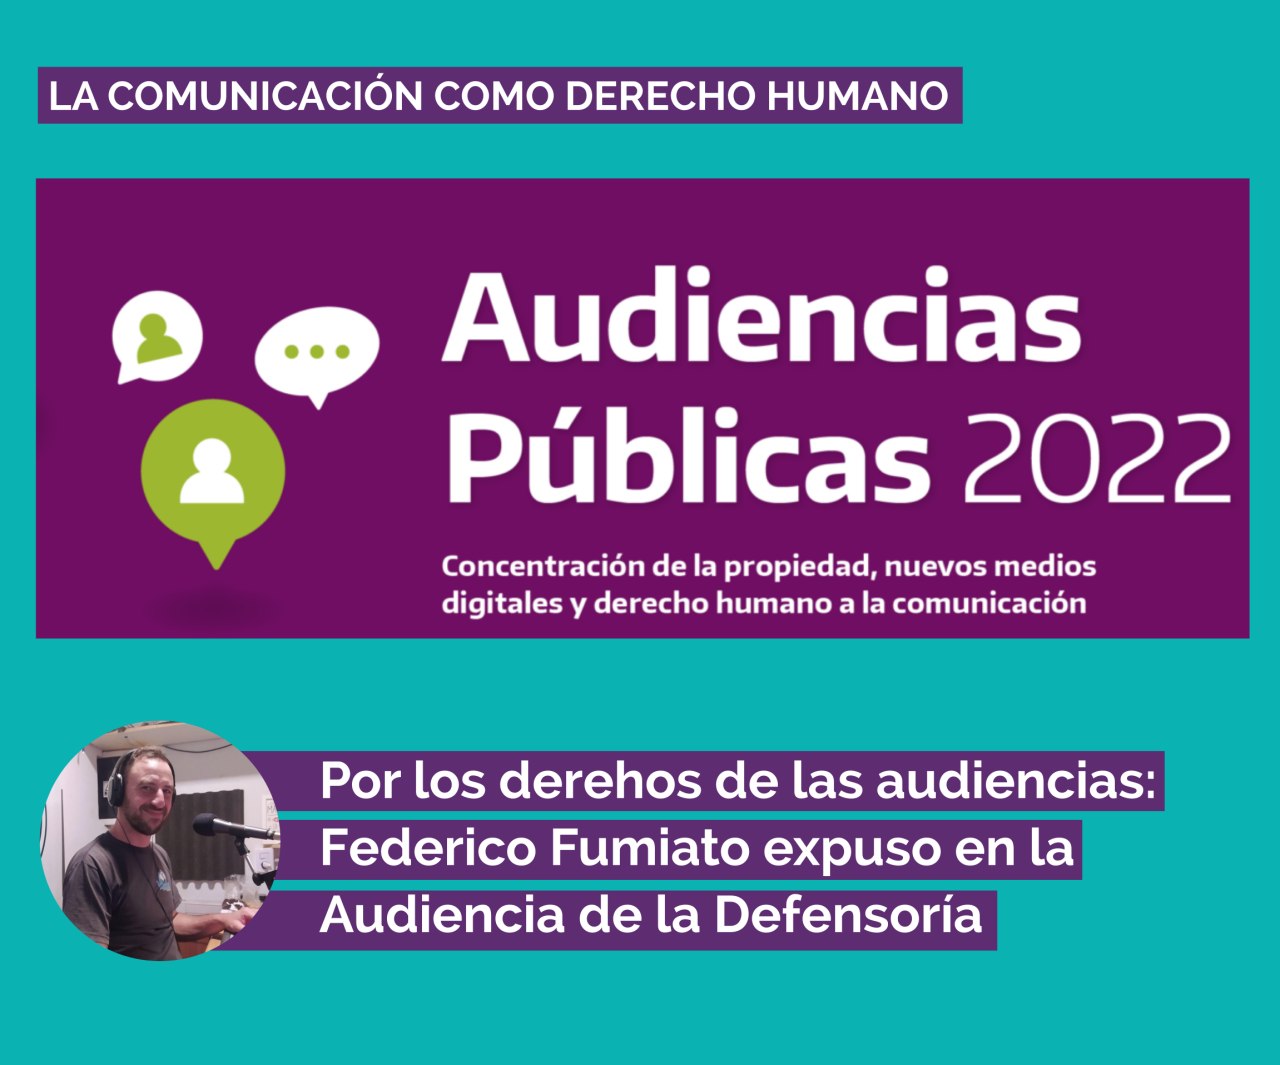 Por los derechos de las audiencias: Federico Fumiato expuso en la Audiencia de la Defensoría